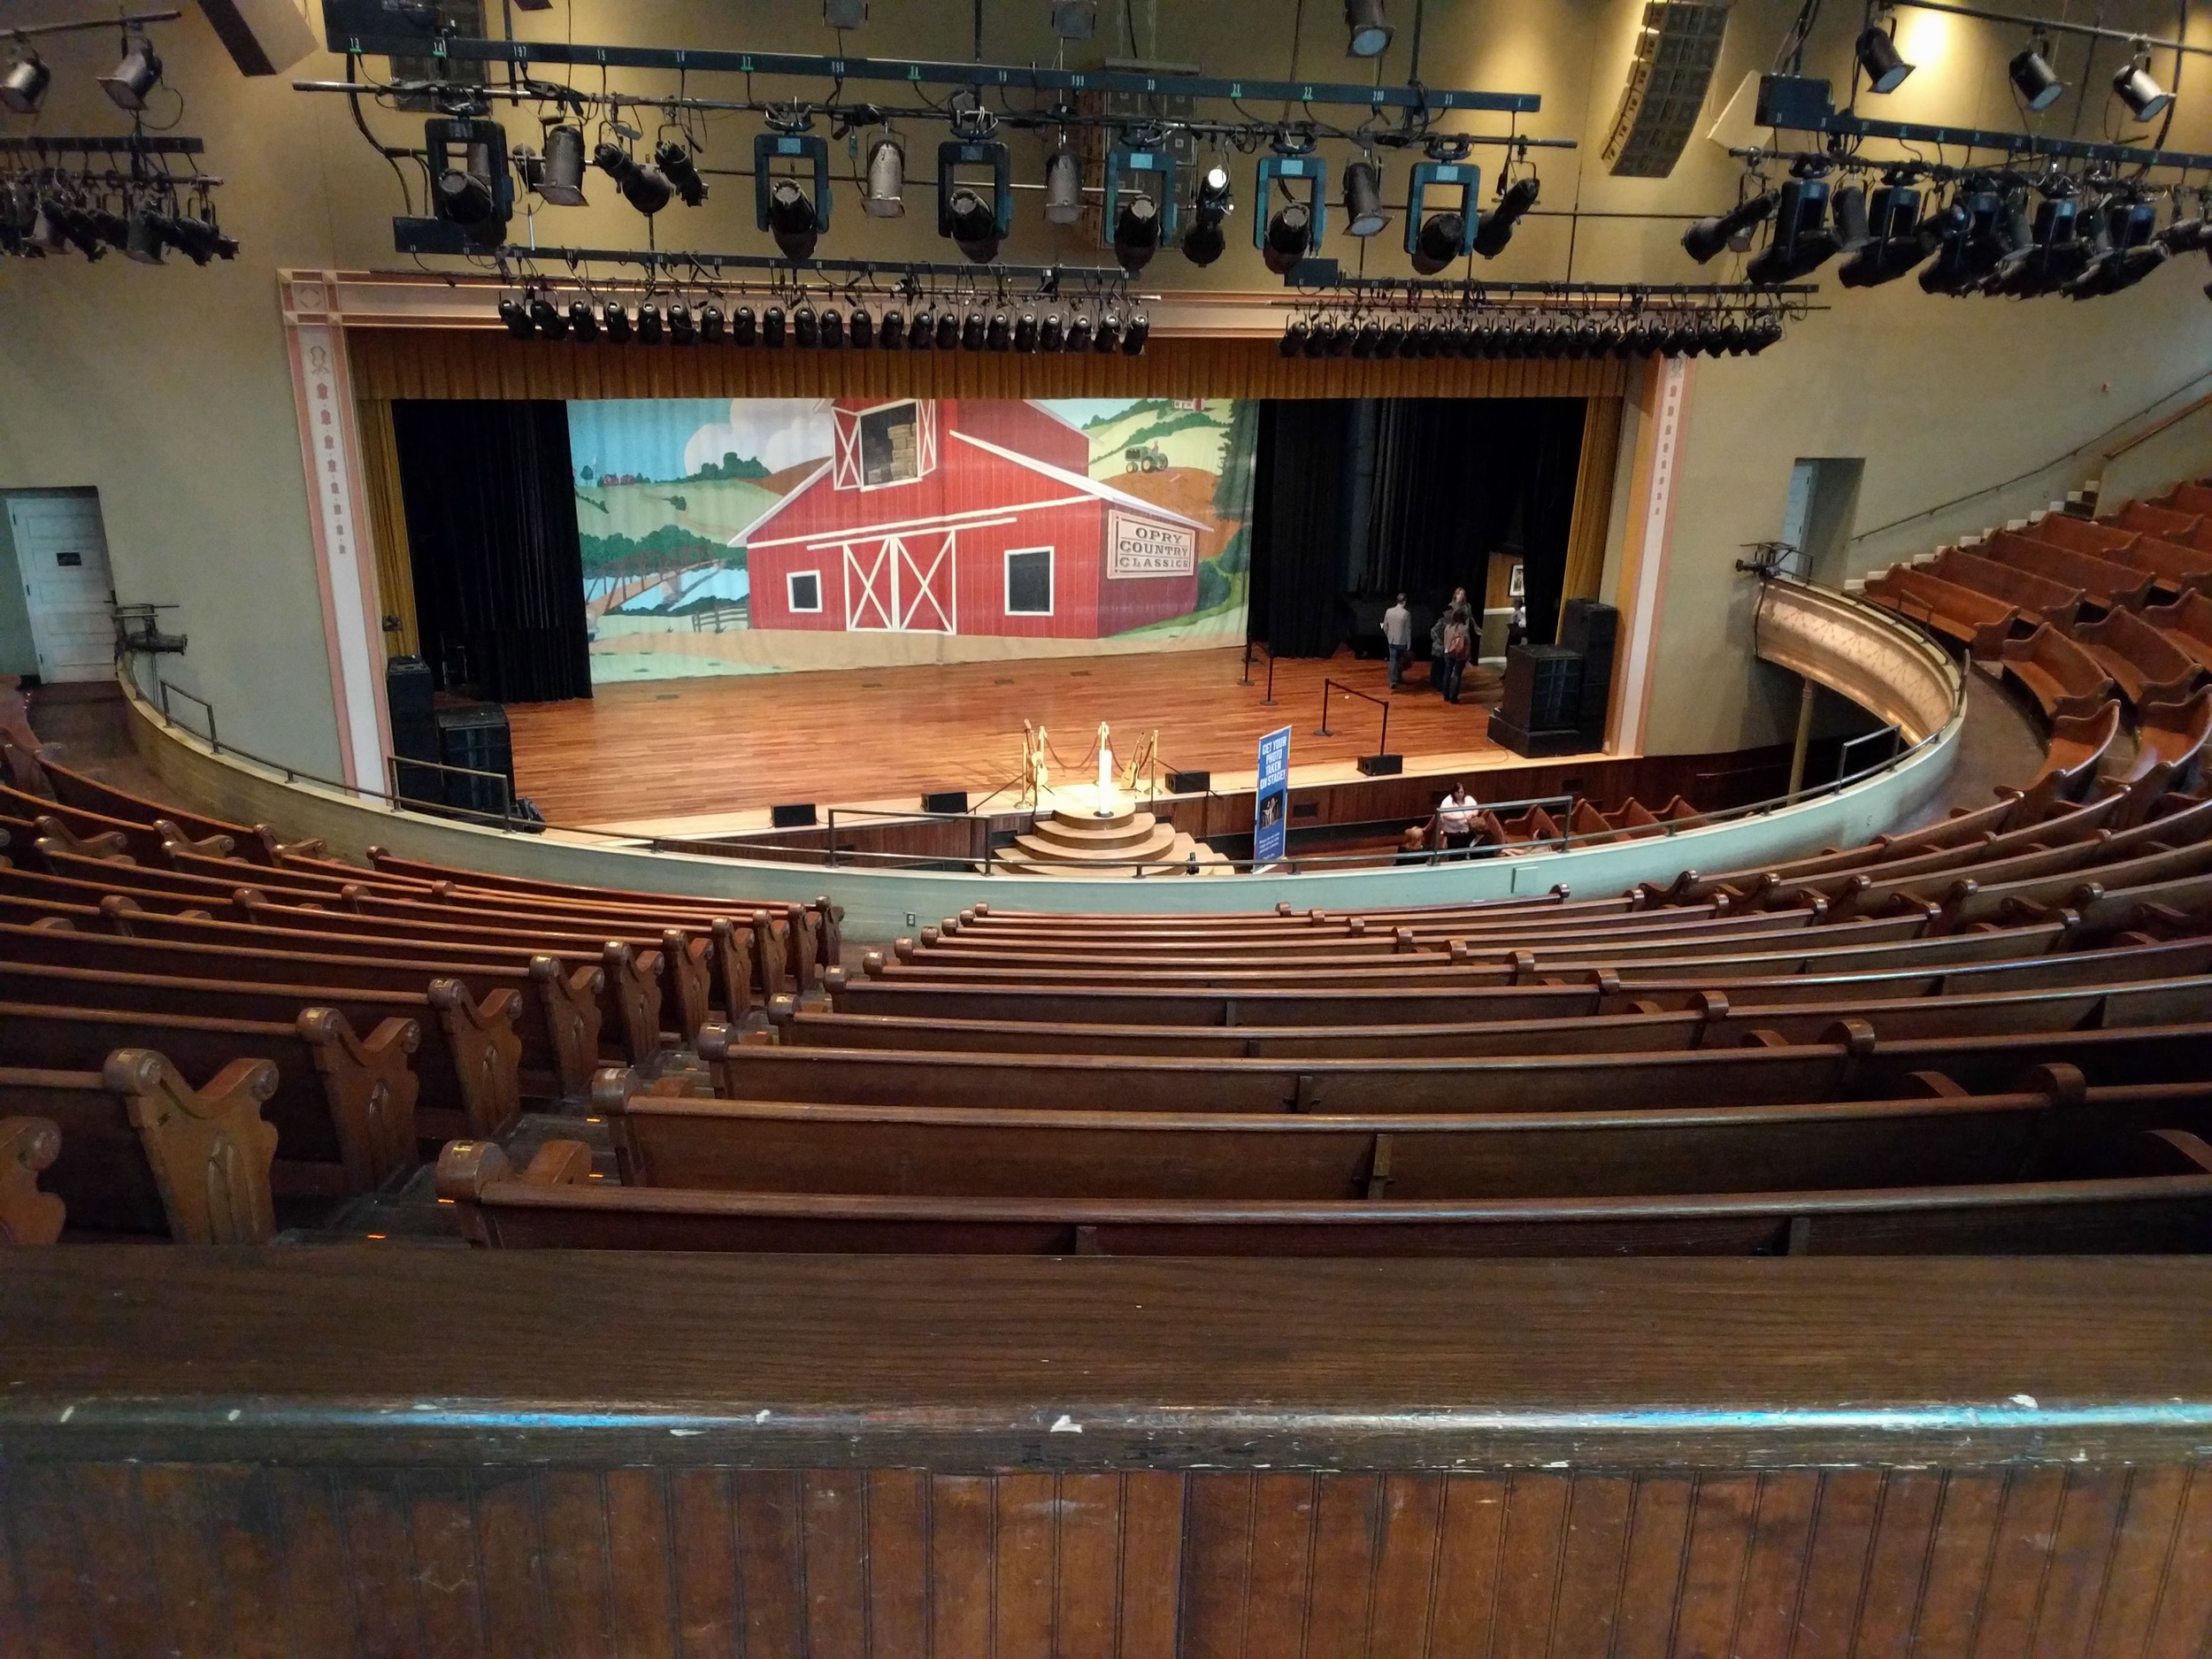  Ryman Auditorium 